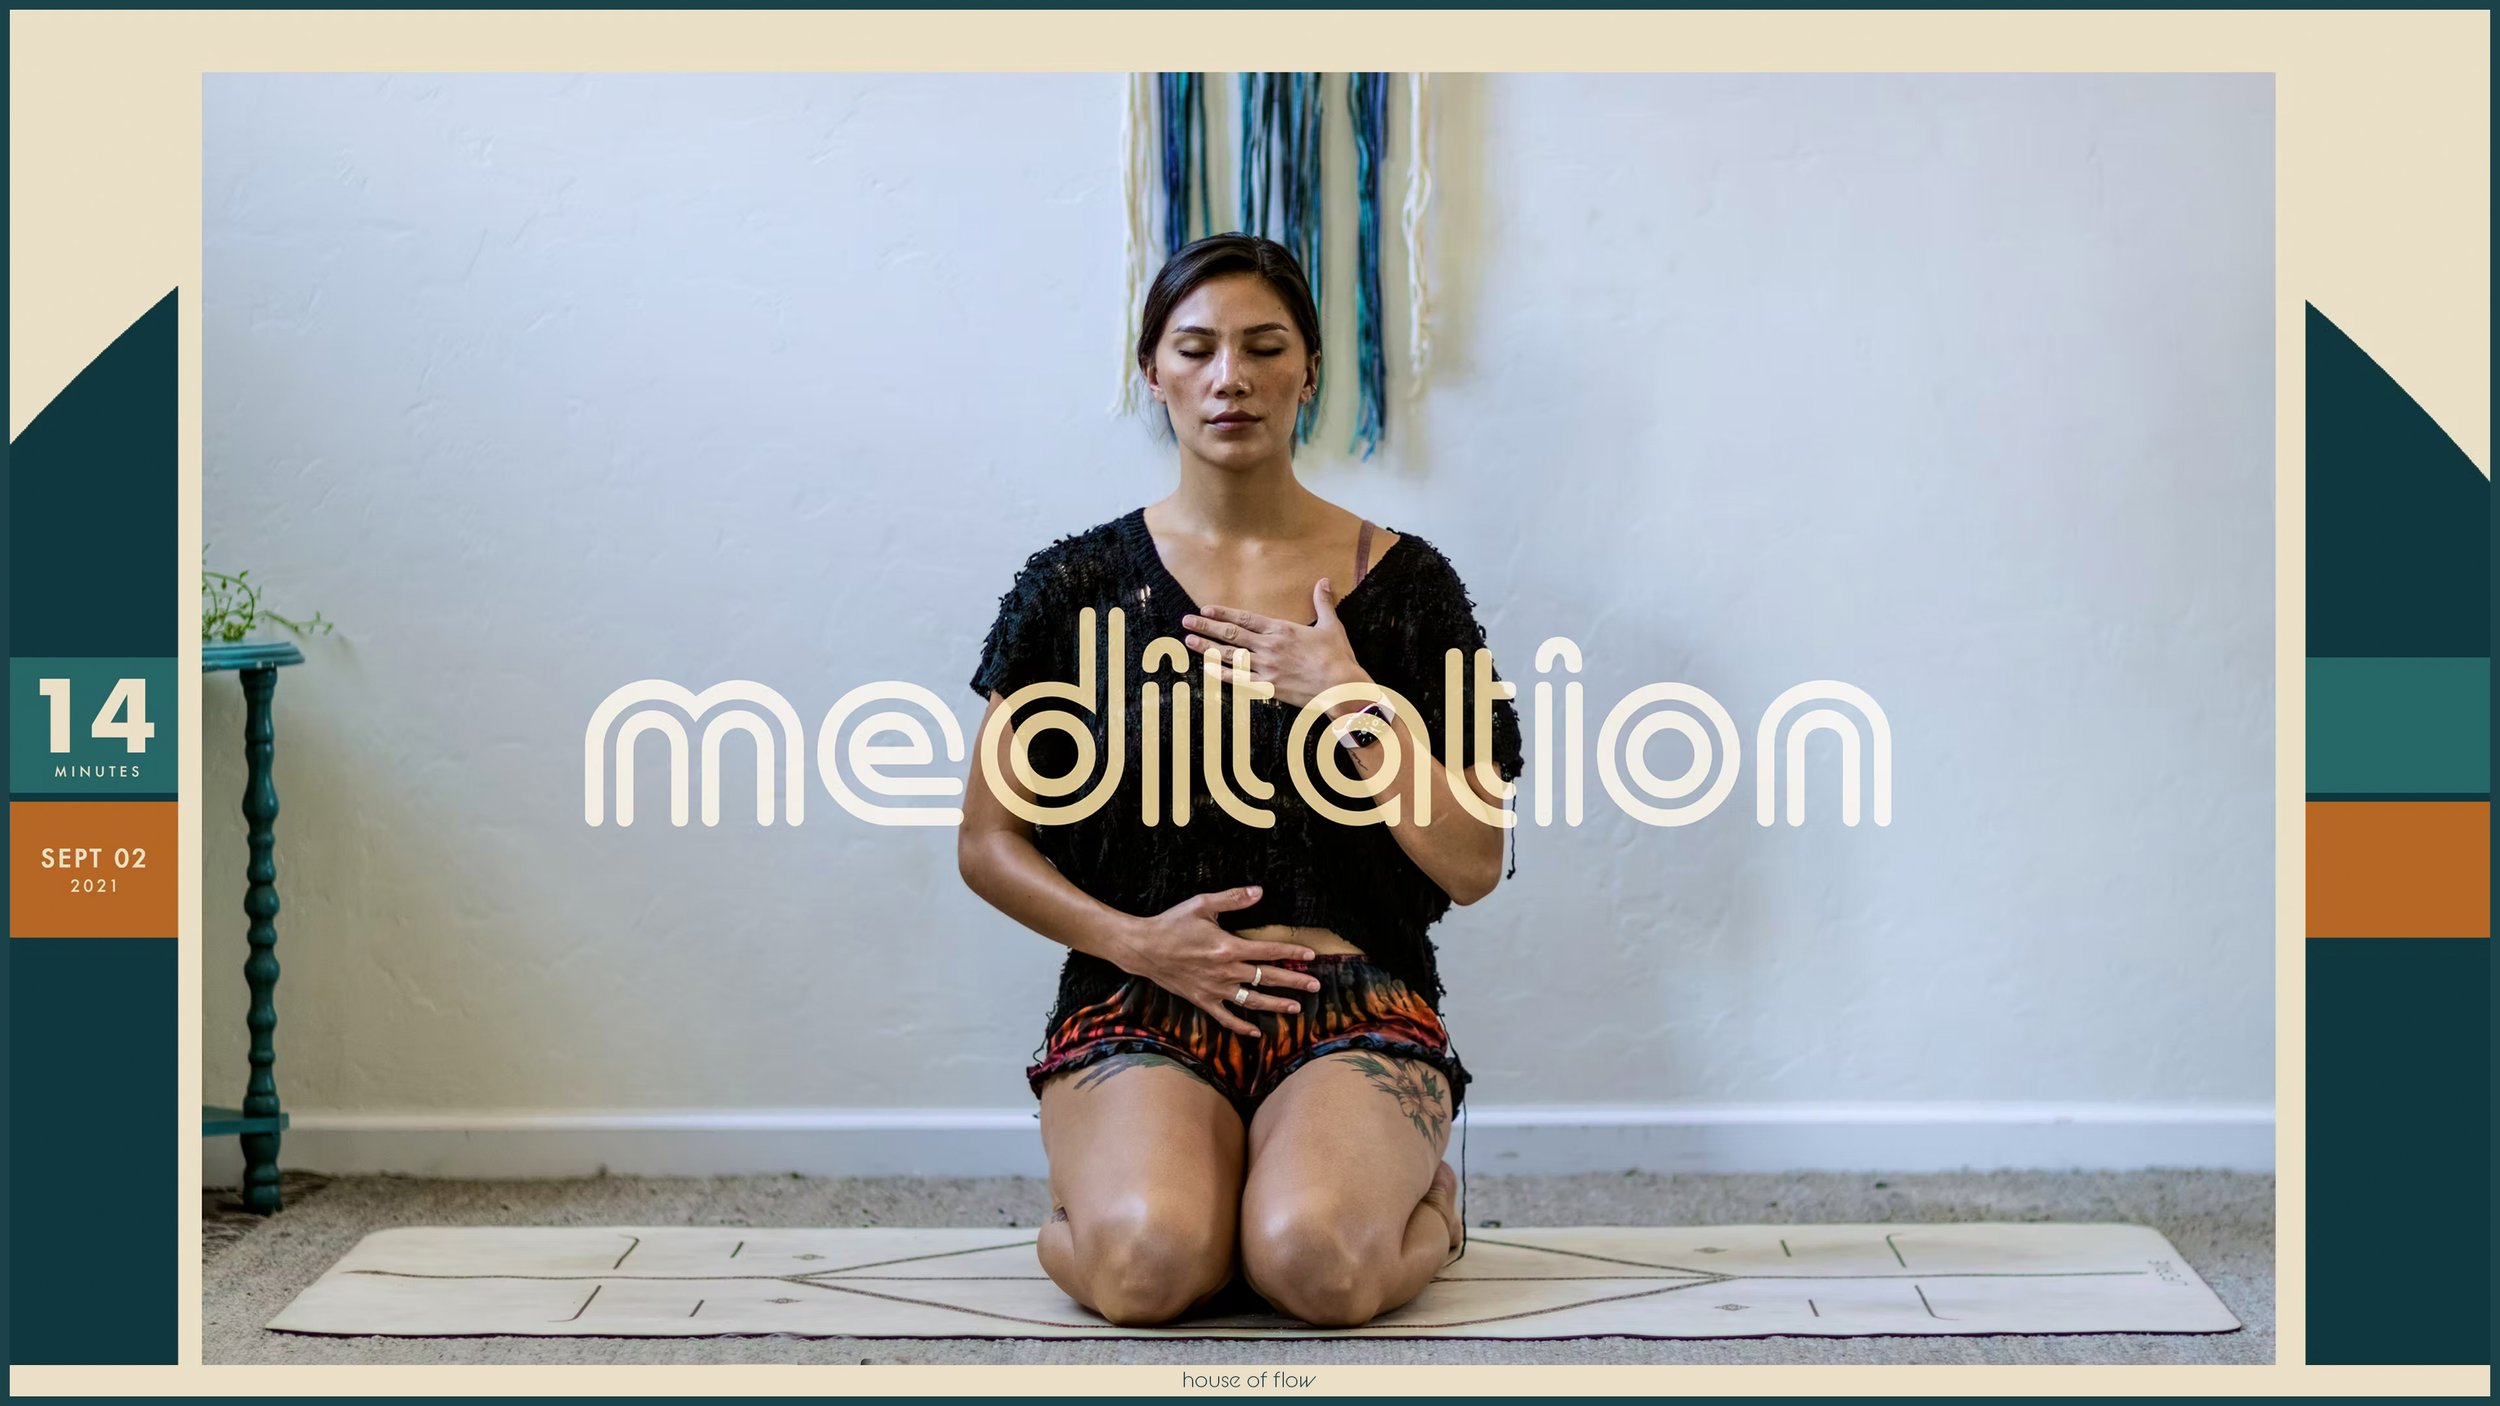 Meditation | After Work | 14 minutes